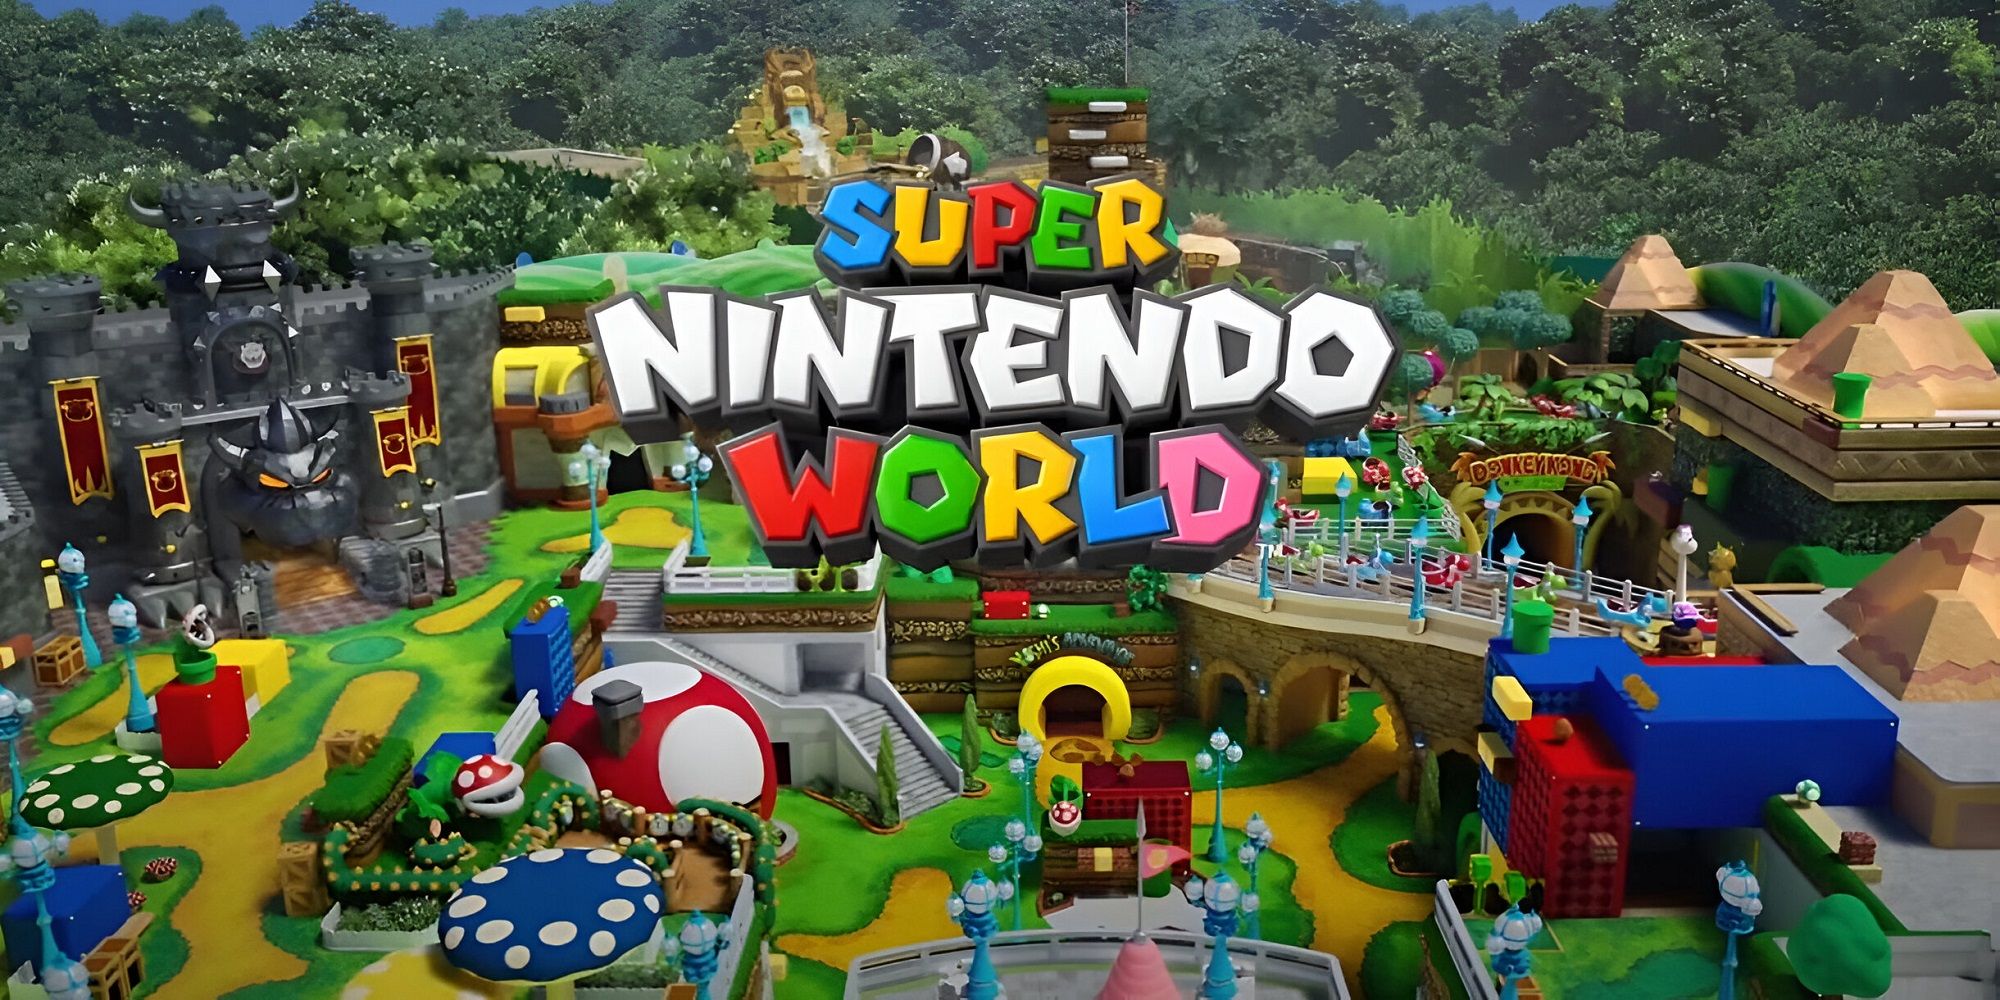 Марио и Донки Конг присоединяются к Super Nintendo World Orlando